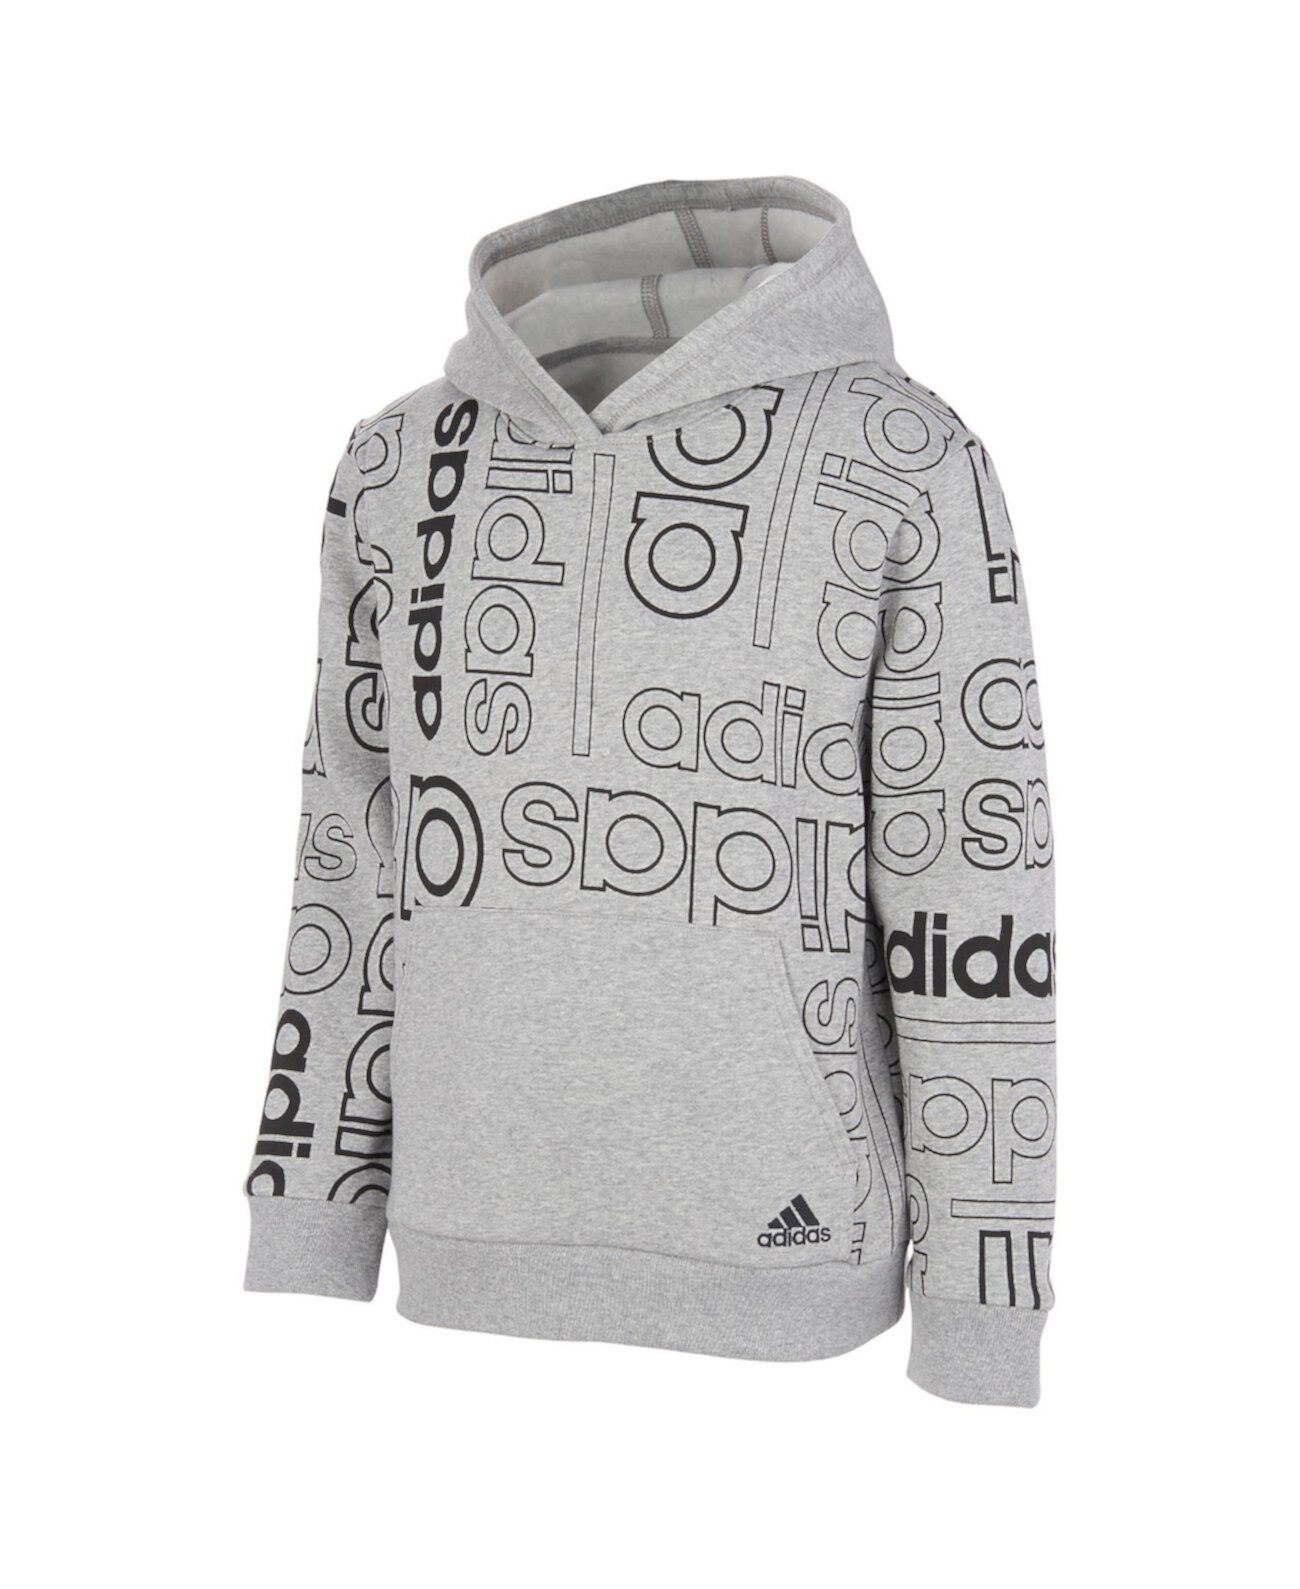 Пуловер с капюшоном в сетку с длинными рукавами и принтом в сетку для больших мальчиков Adidas